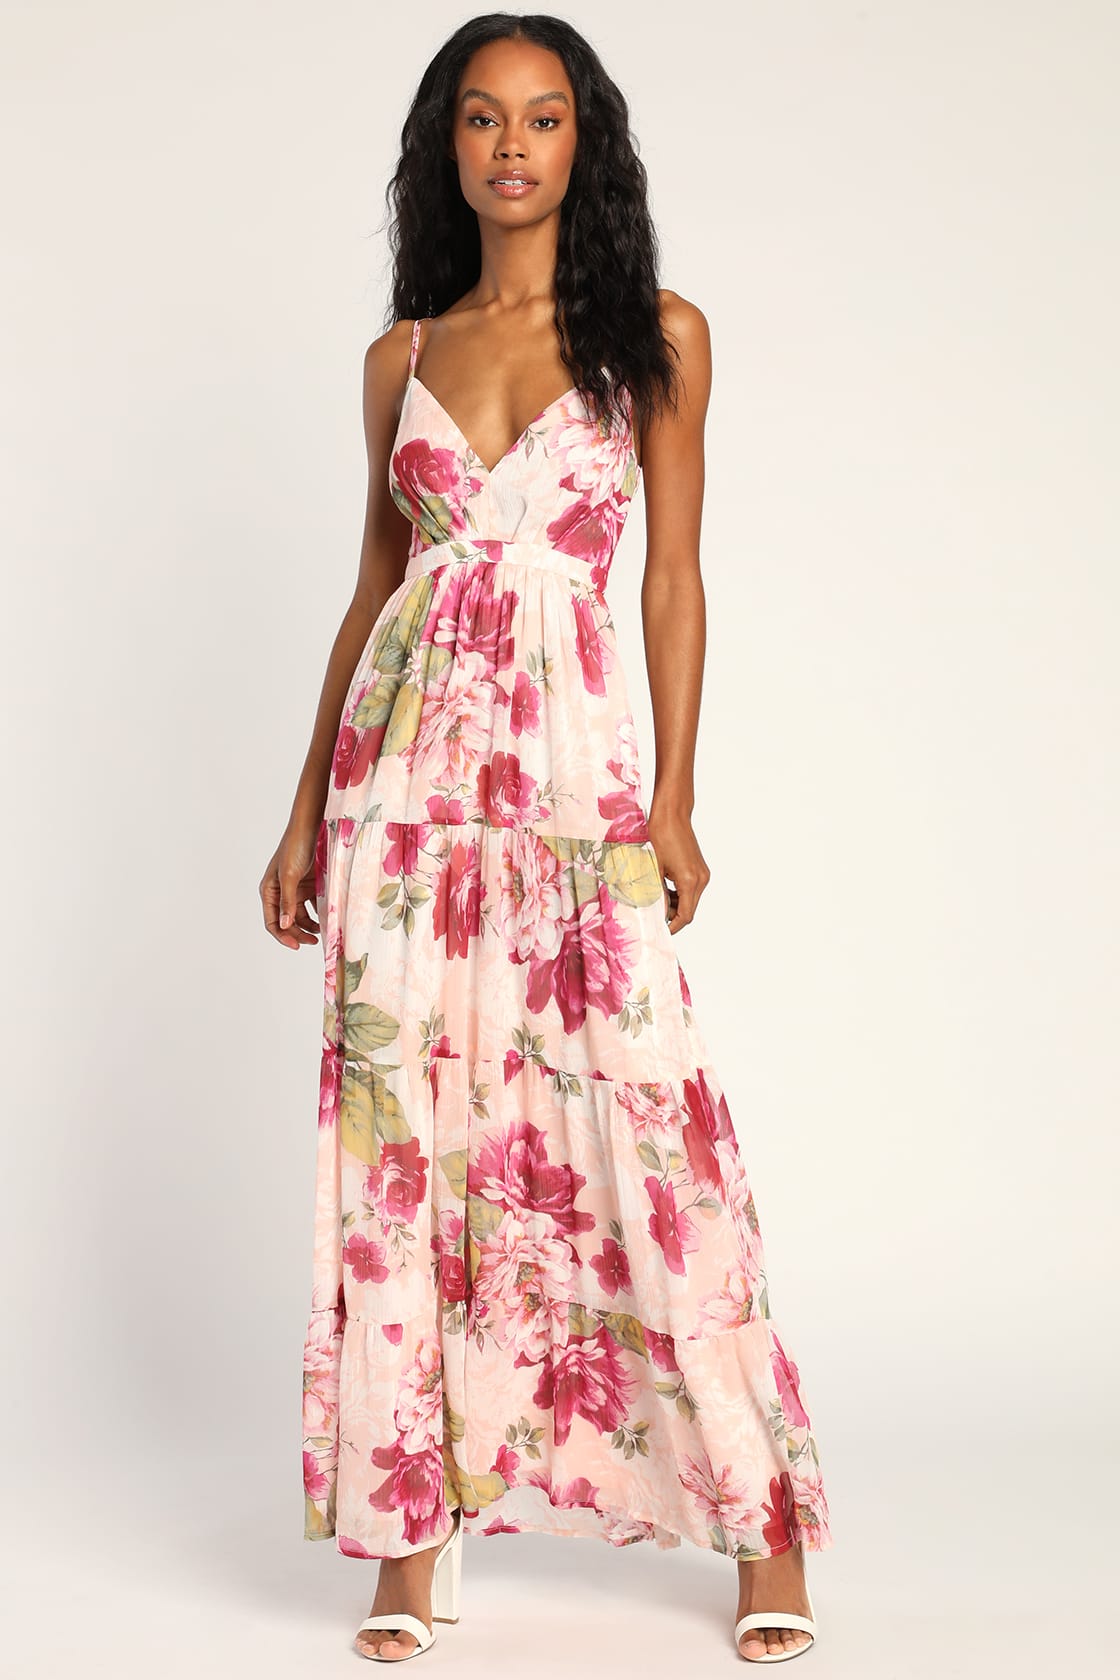 Blush Pink Maxi Dress - Tiered Chiffon Dress - Floral Maxi Dress - Lulus